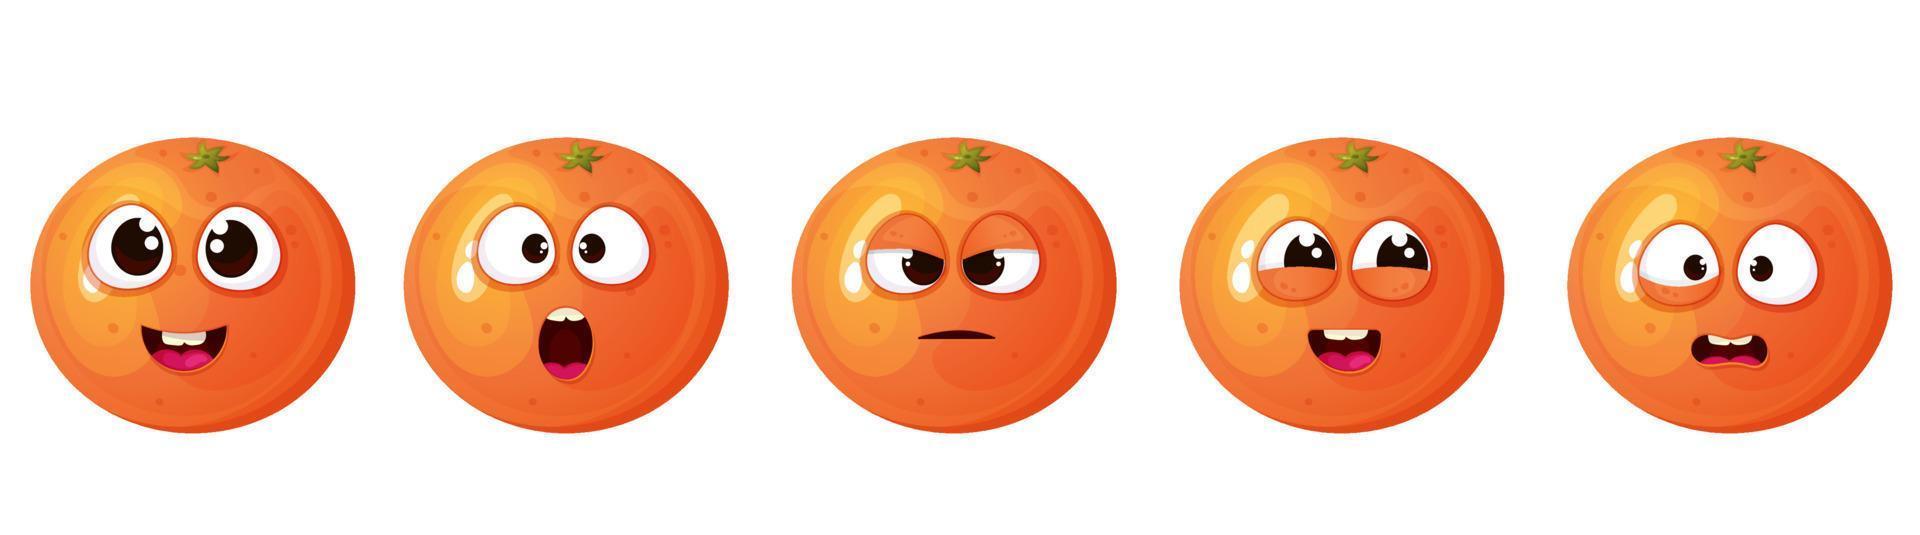 komisch süß Orange einstellen mit anders Emotion Gesicht. vektor